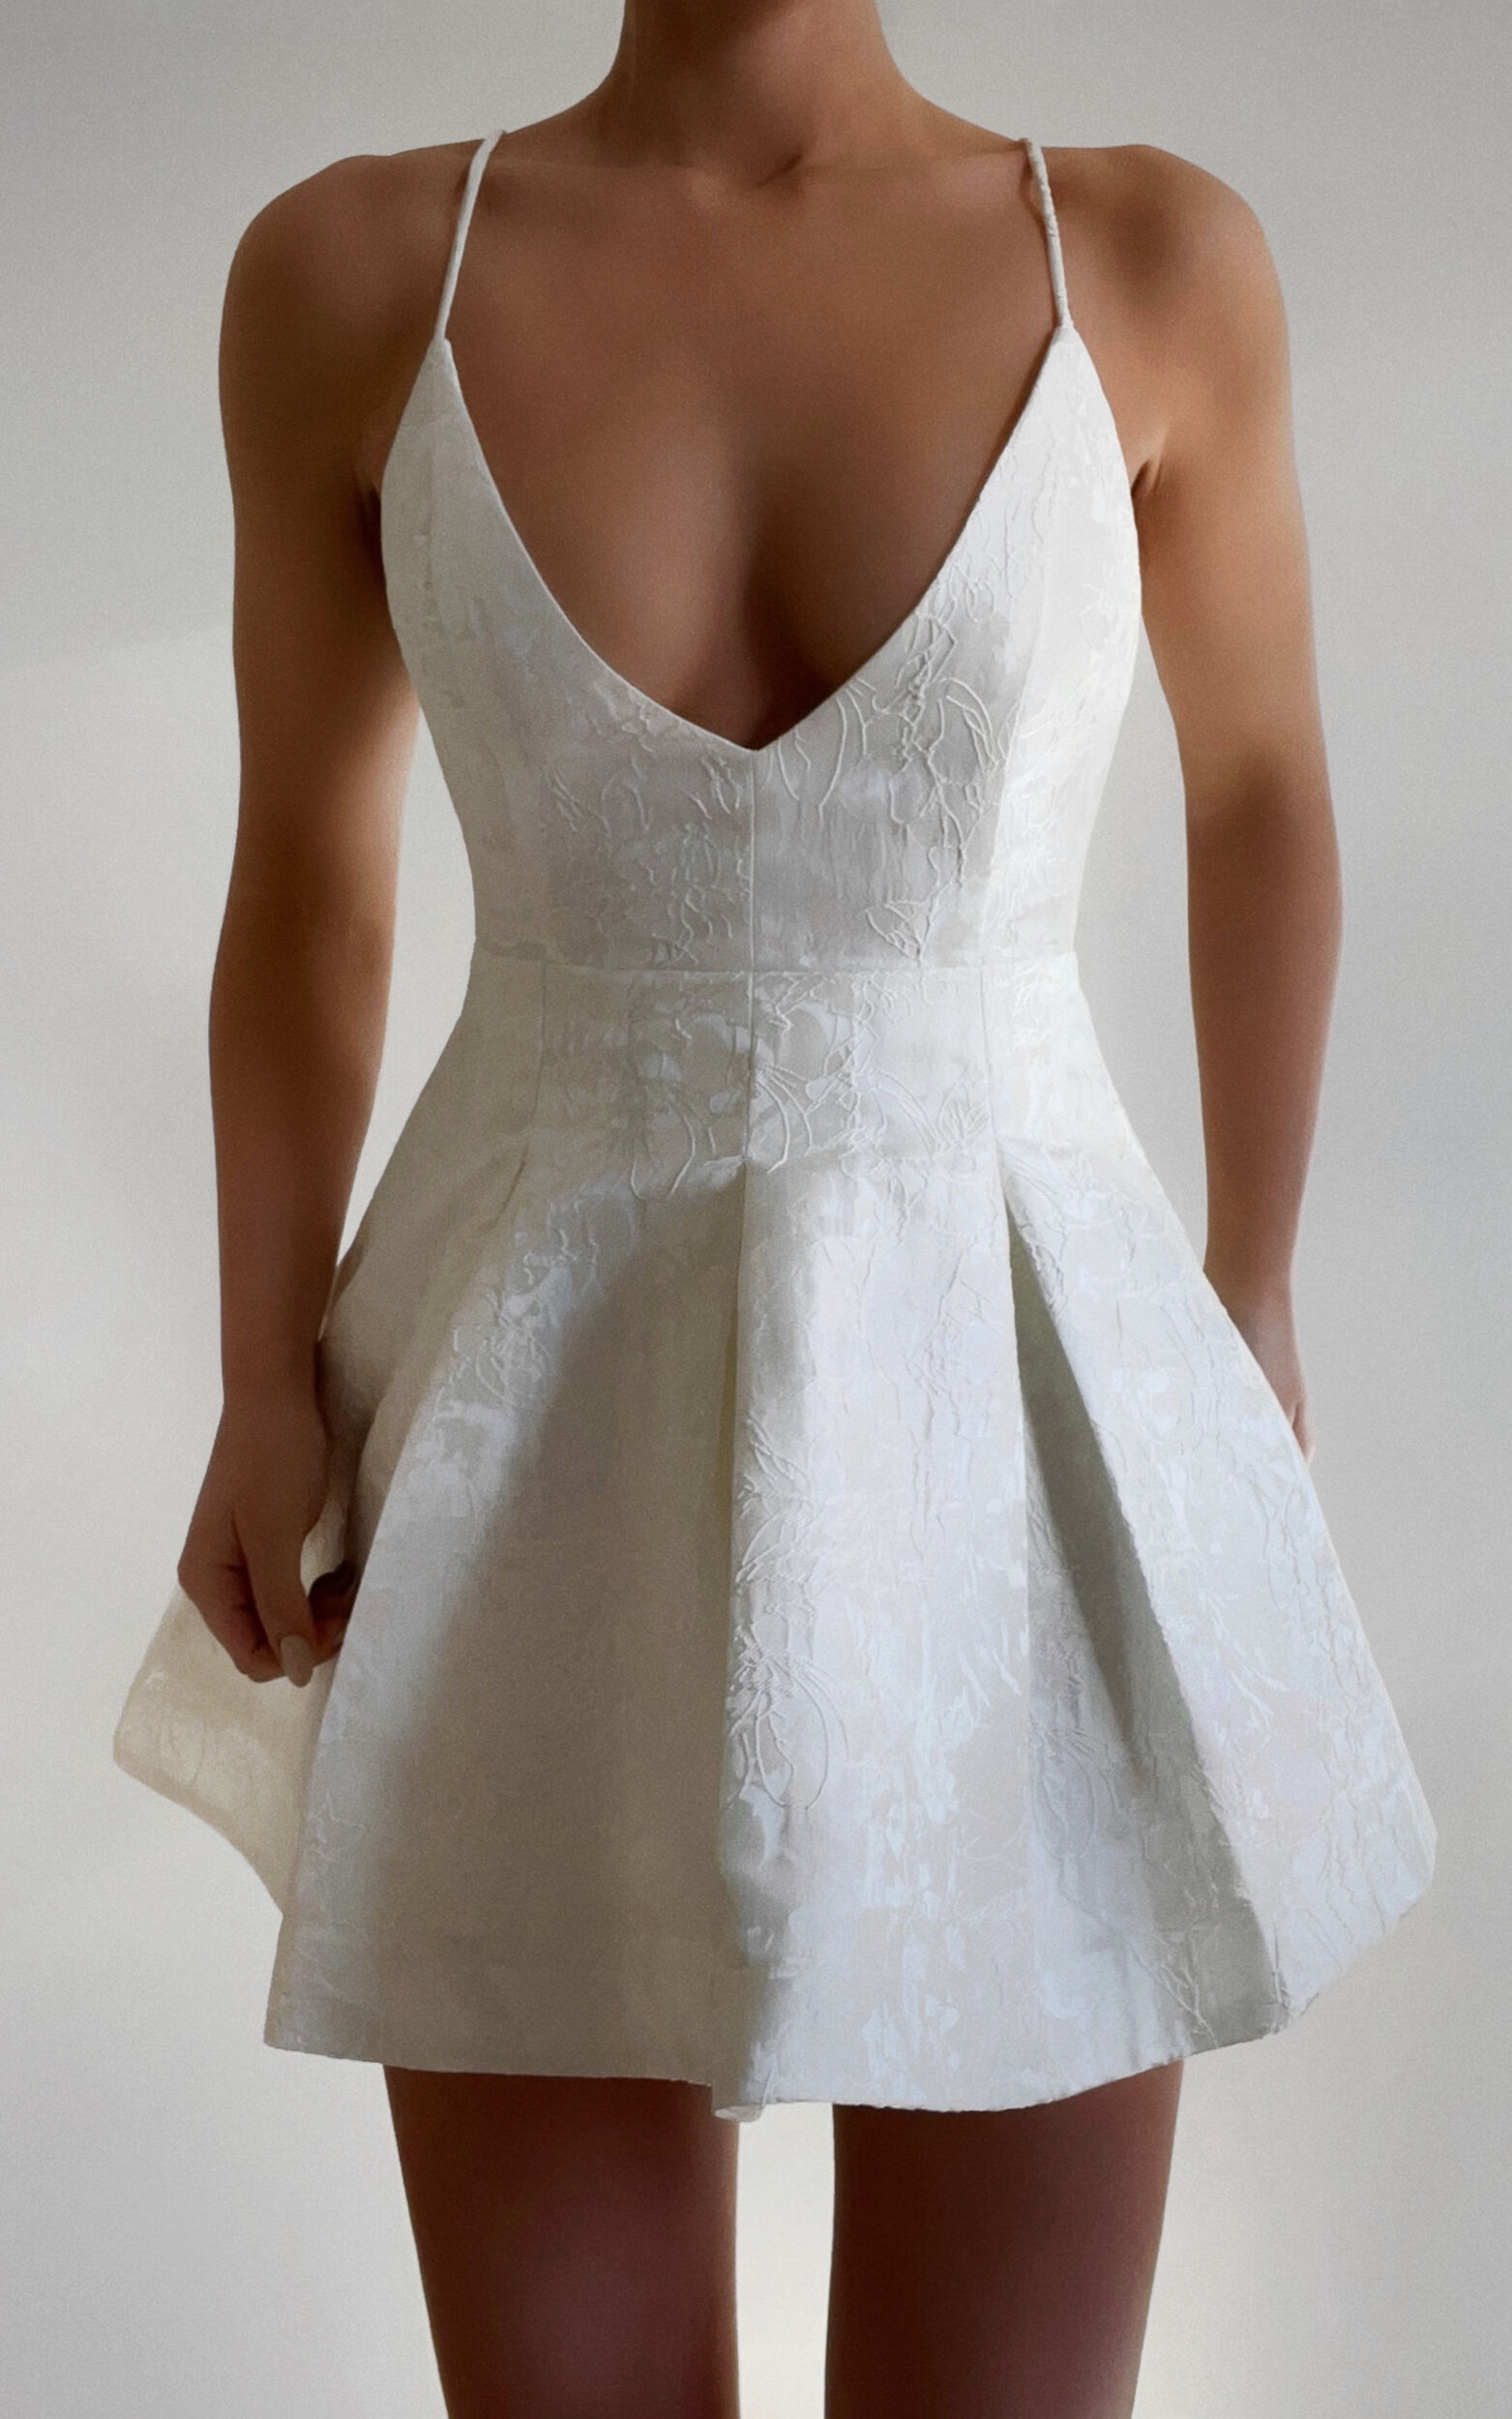 Plunge Corset Mini Dress in White